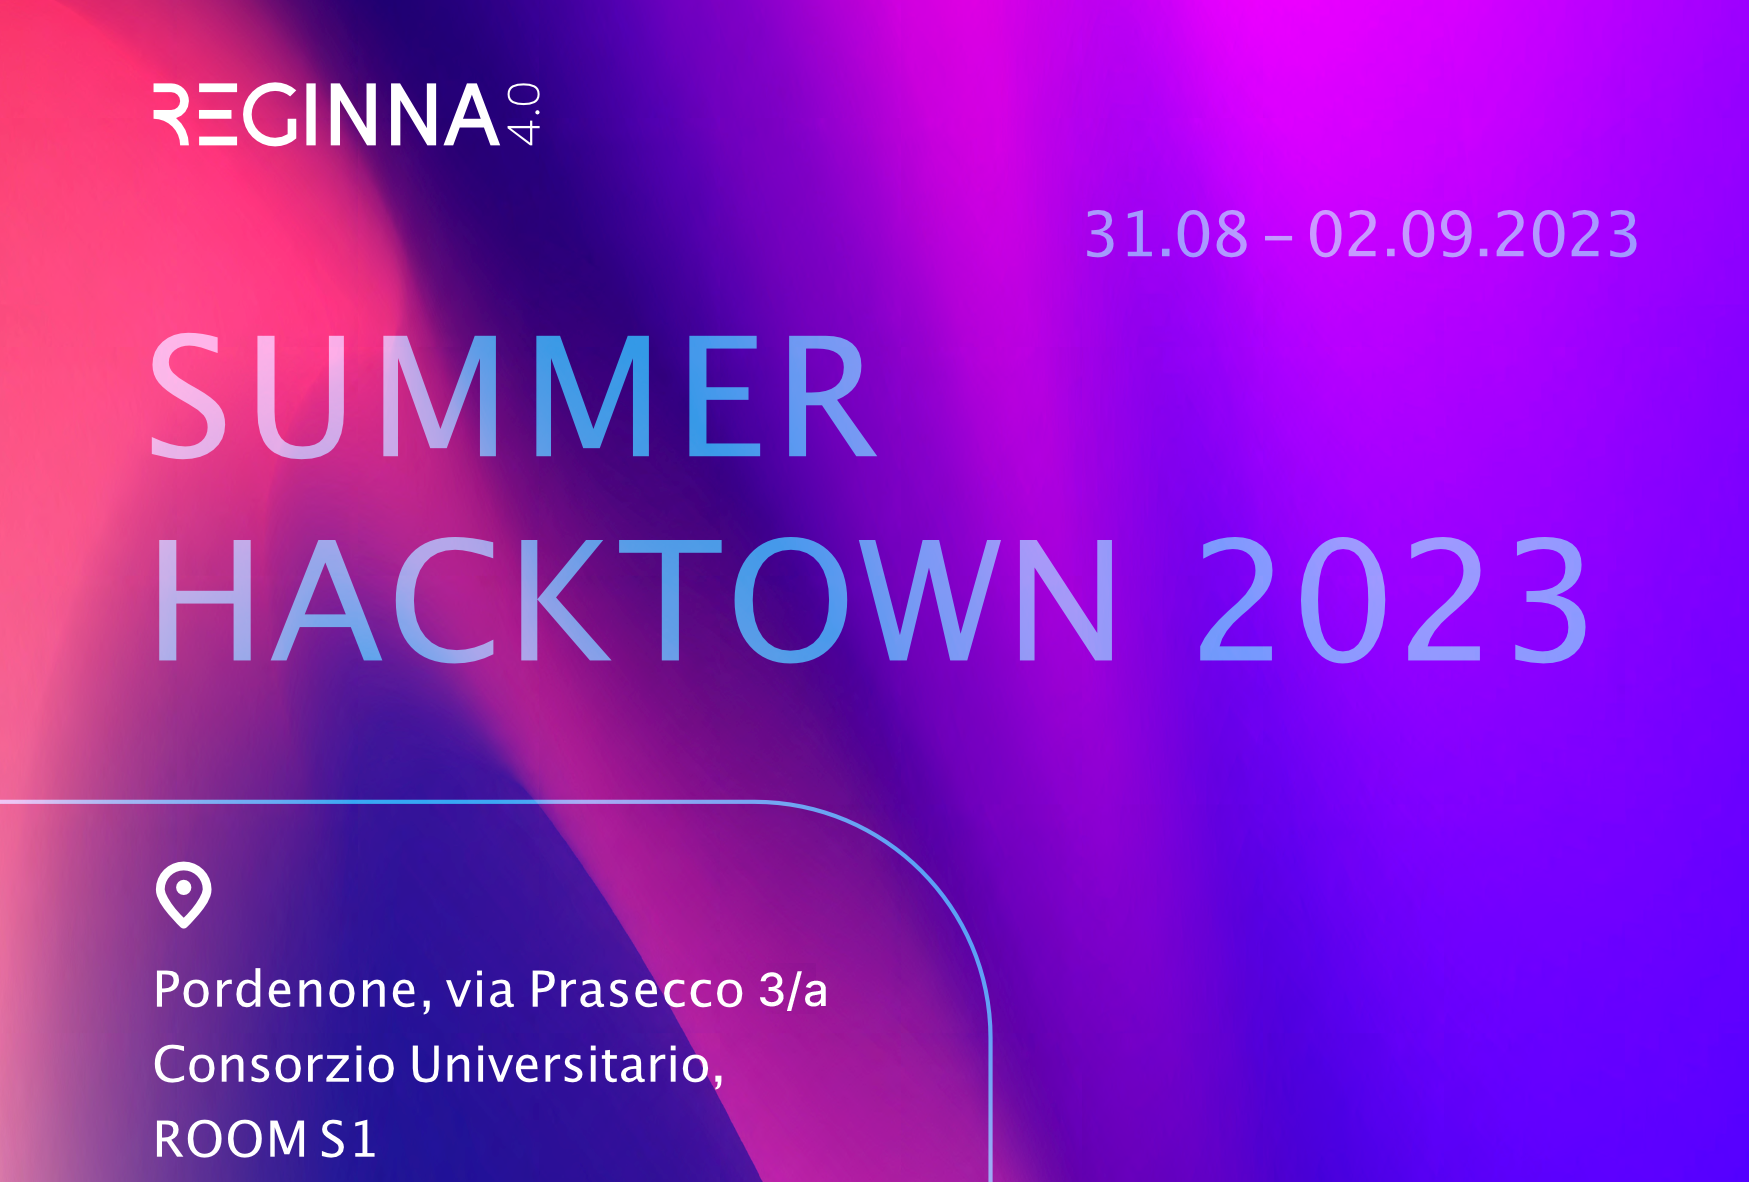 SUMMER HACKATON 2023 in Pordenone – 31.08 – 02.09